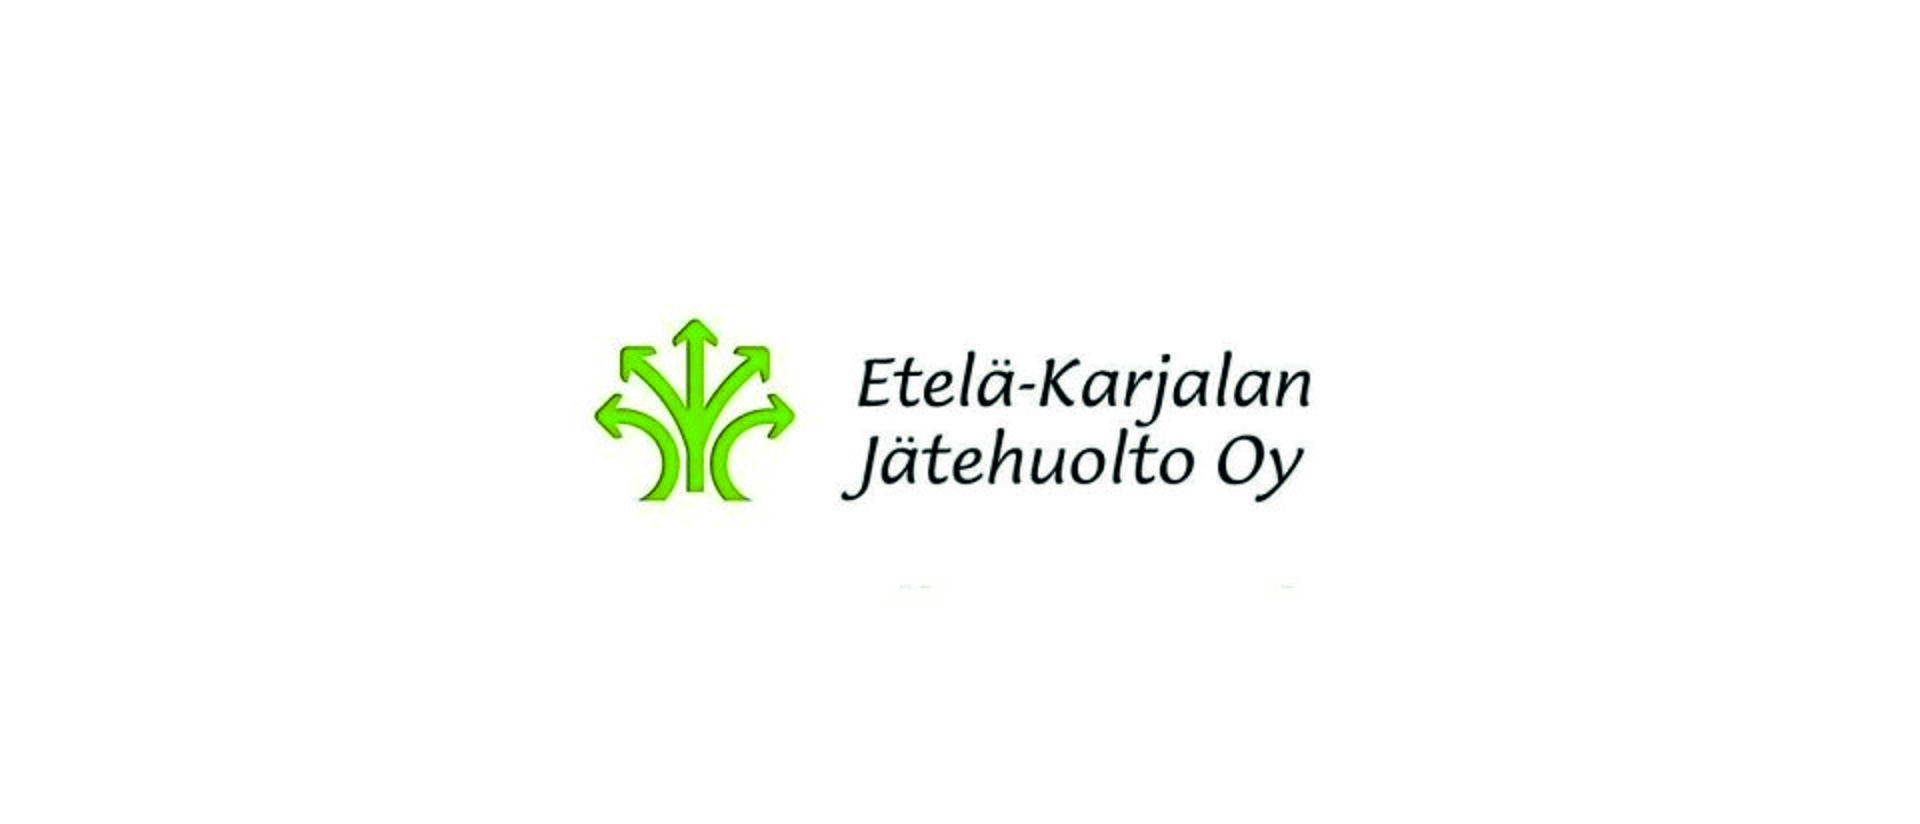 Etelä-Karjalan jätehuollon logo